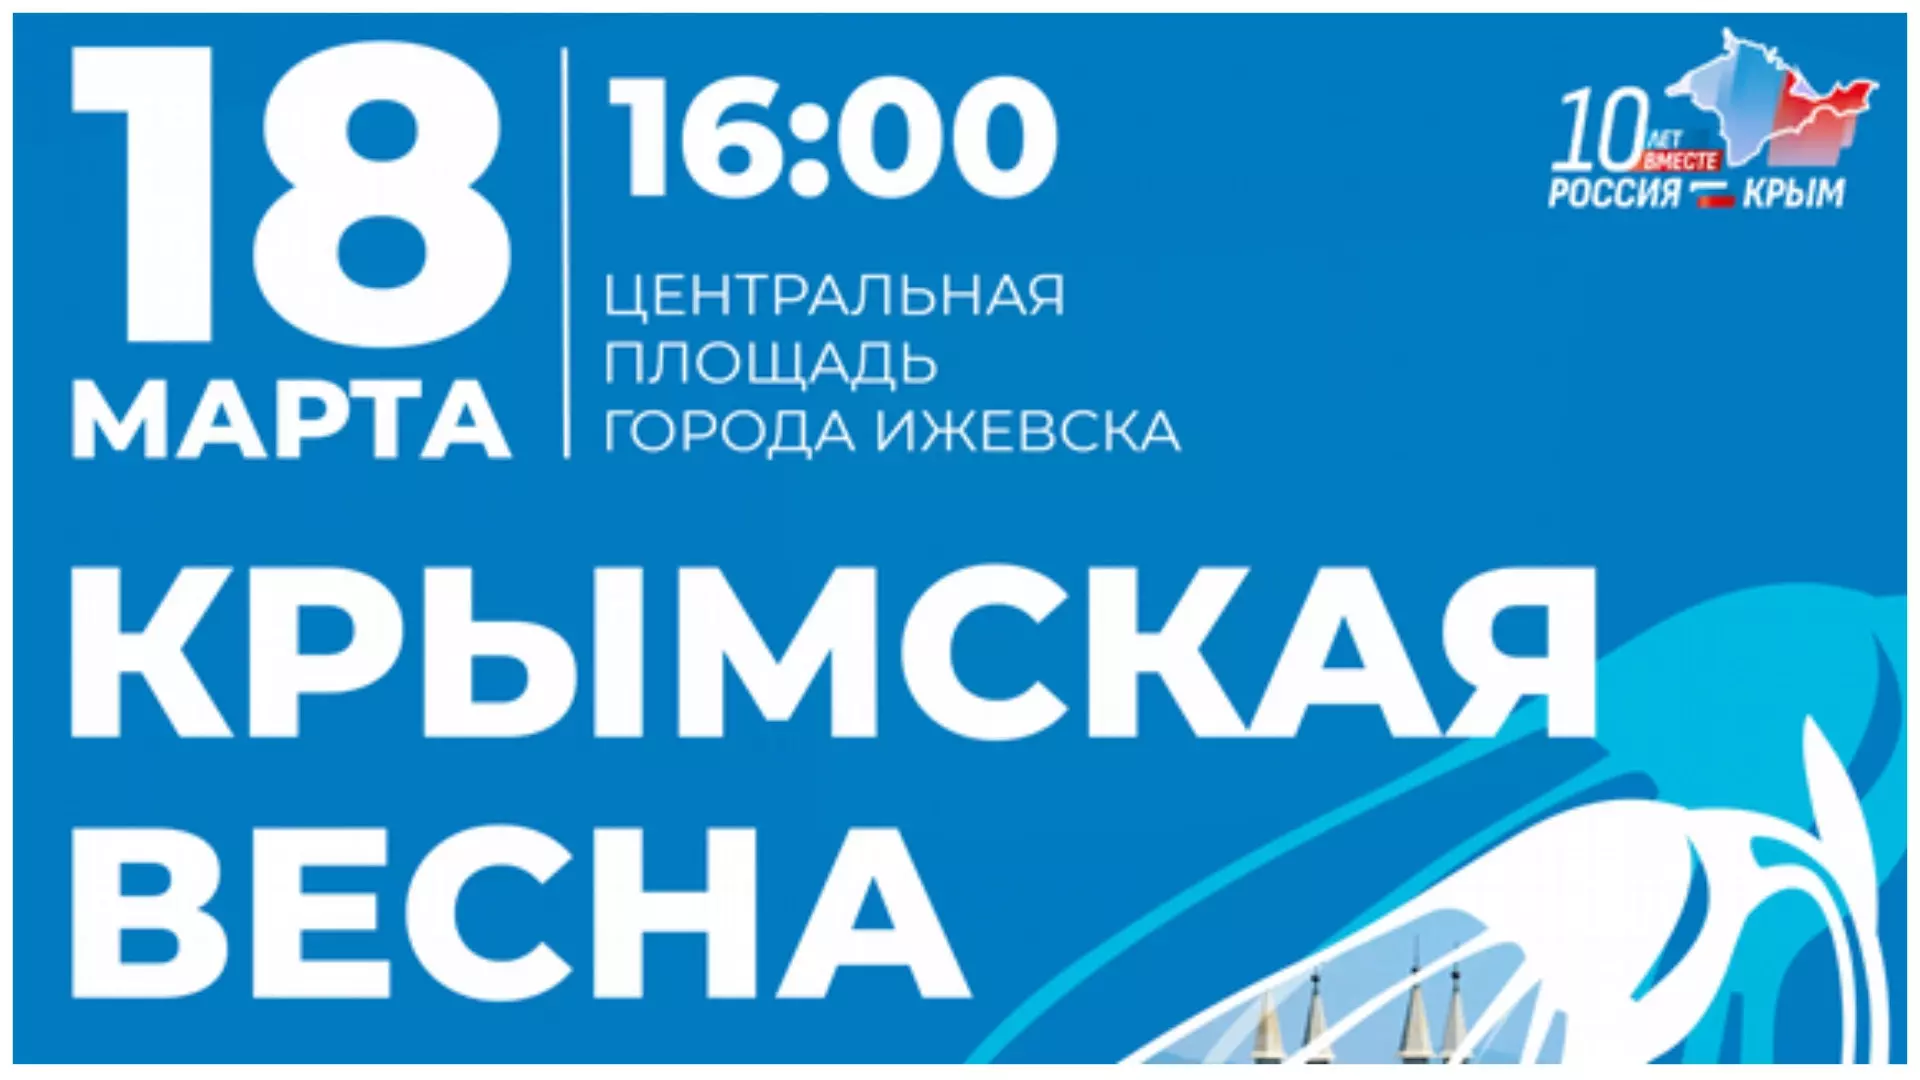 «Крымская весна» пройдет на Центральной площади в Ижевске 18 марта